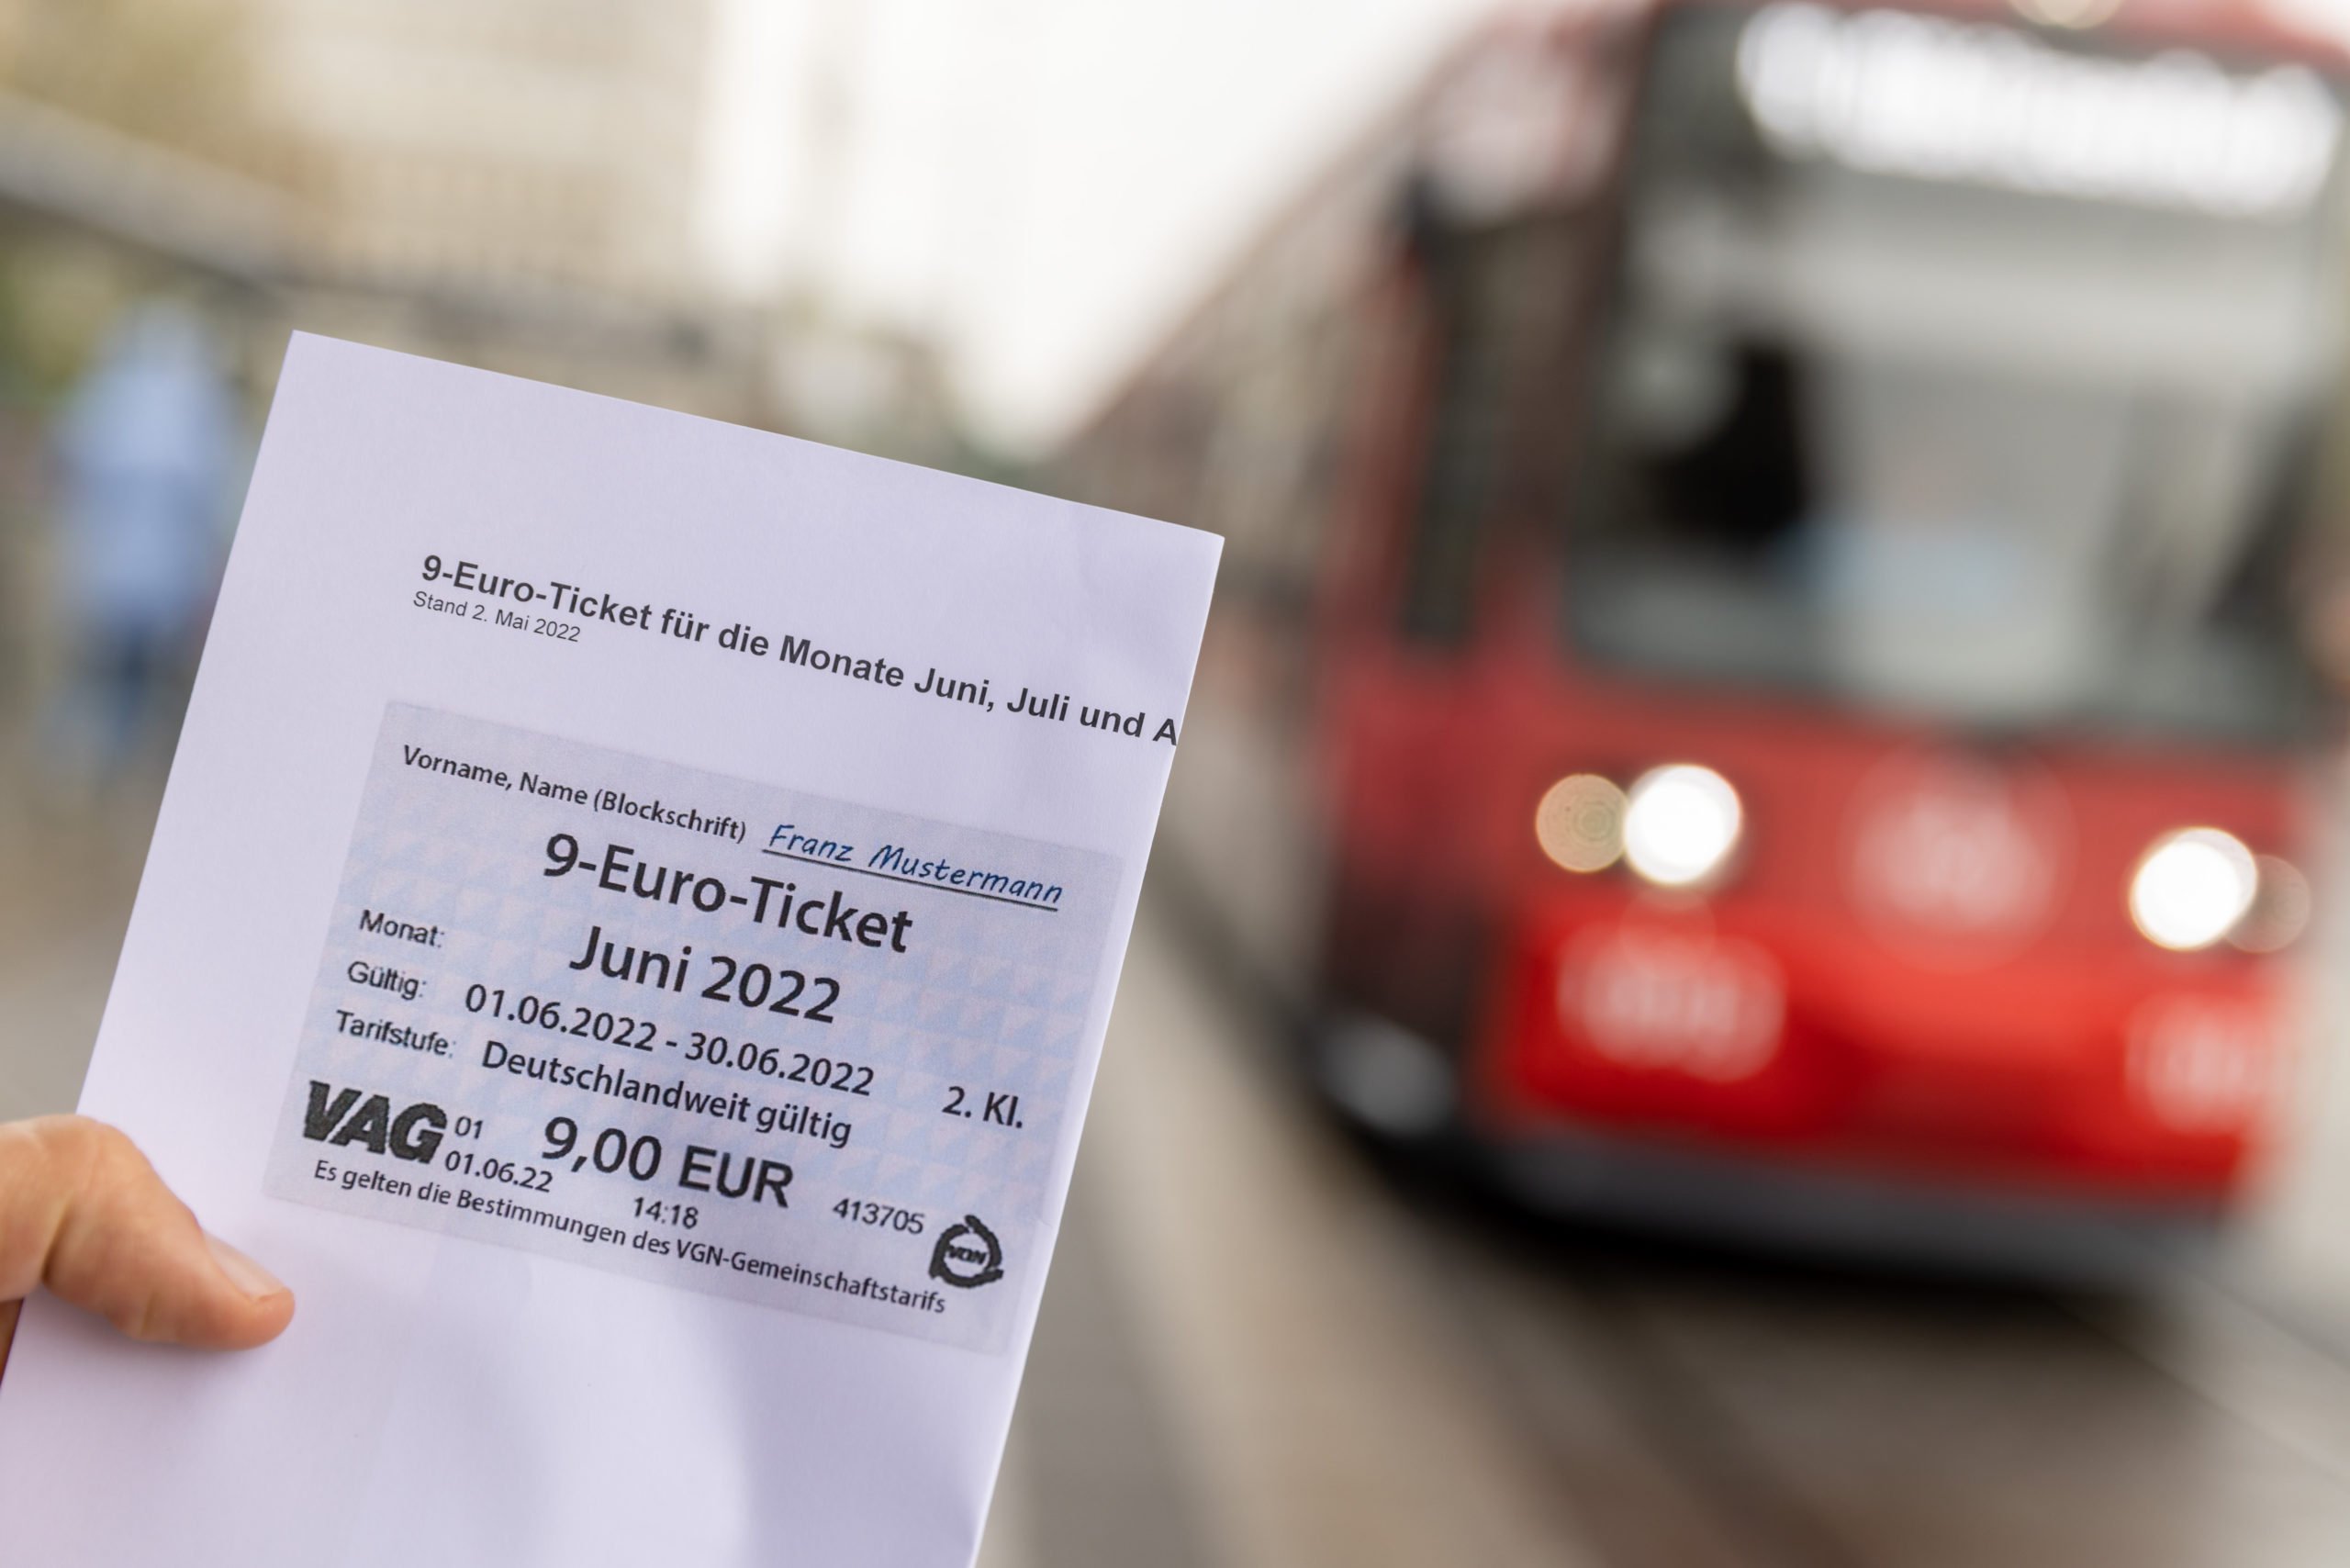 Un employé de la VAG (Verkehrs-Aktiengesellschaft Nürnberg) présente une ébauche imprimée du billet à 9 €.